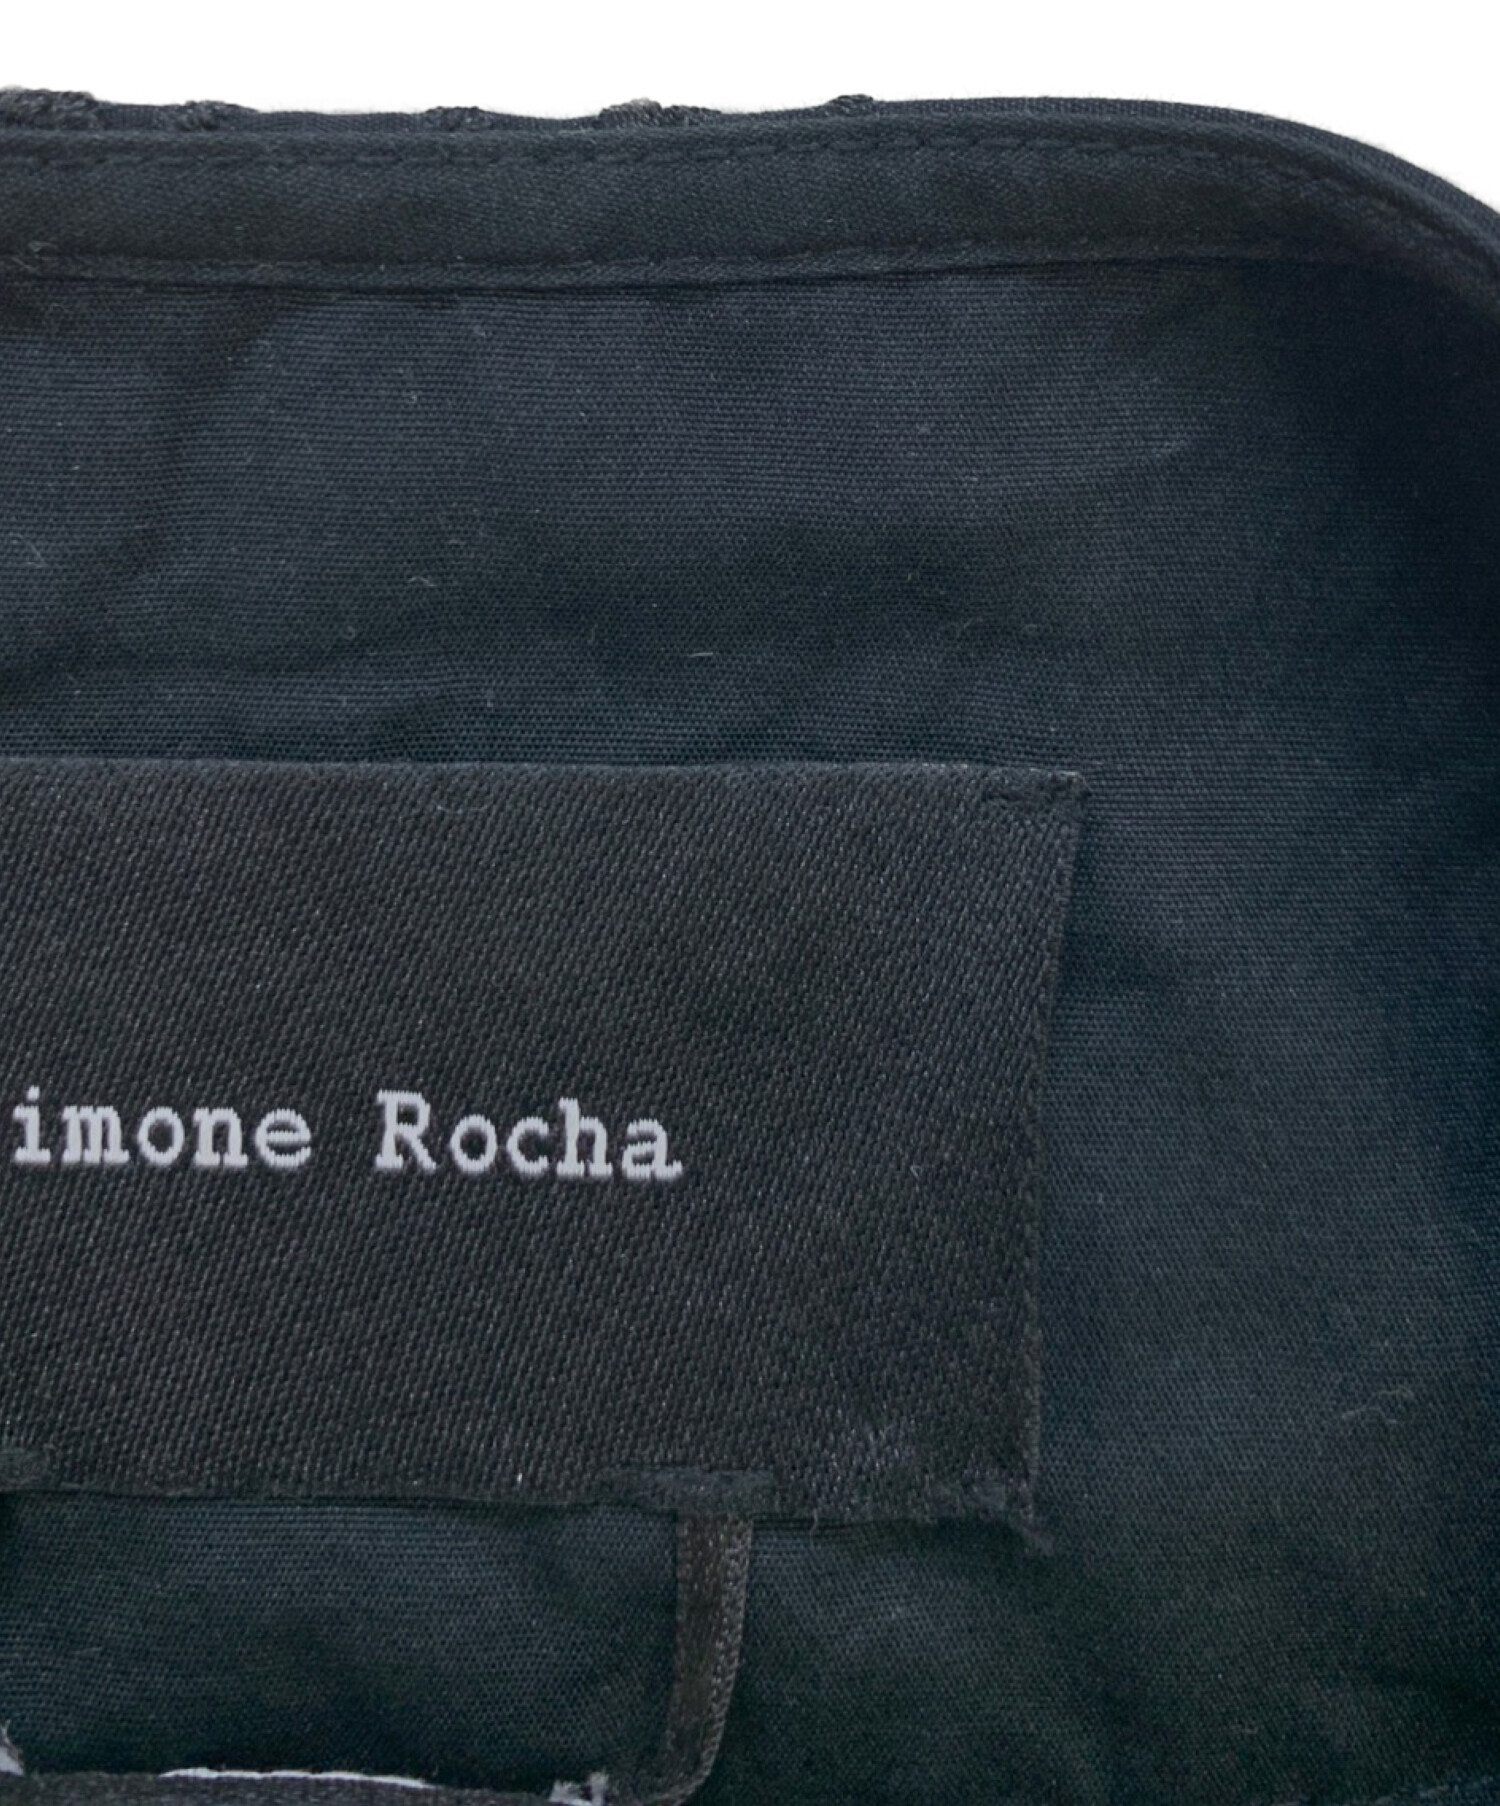 Simone Rocha (シモーネ ロシャ) ロング付け襟 ブラック サイズ:OS